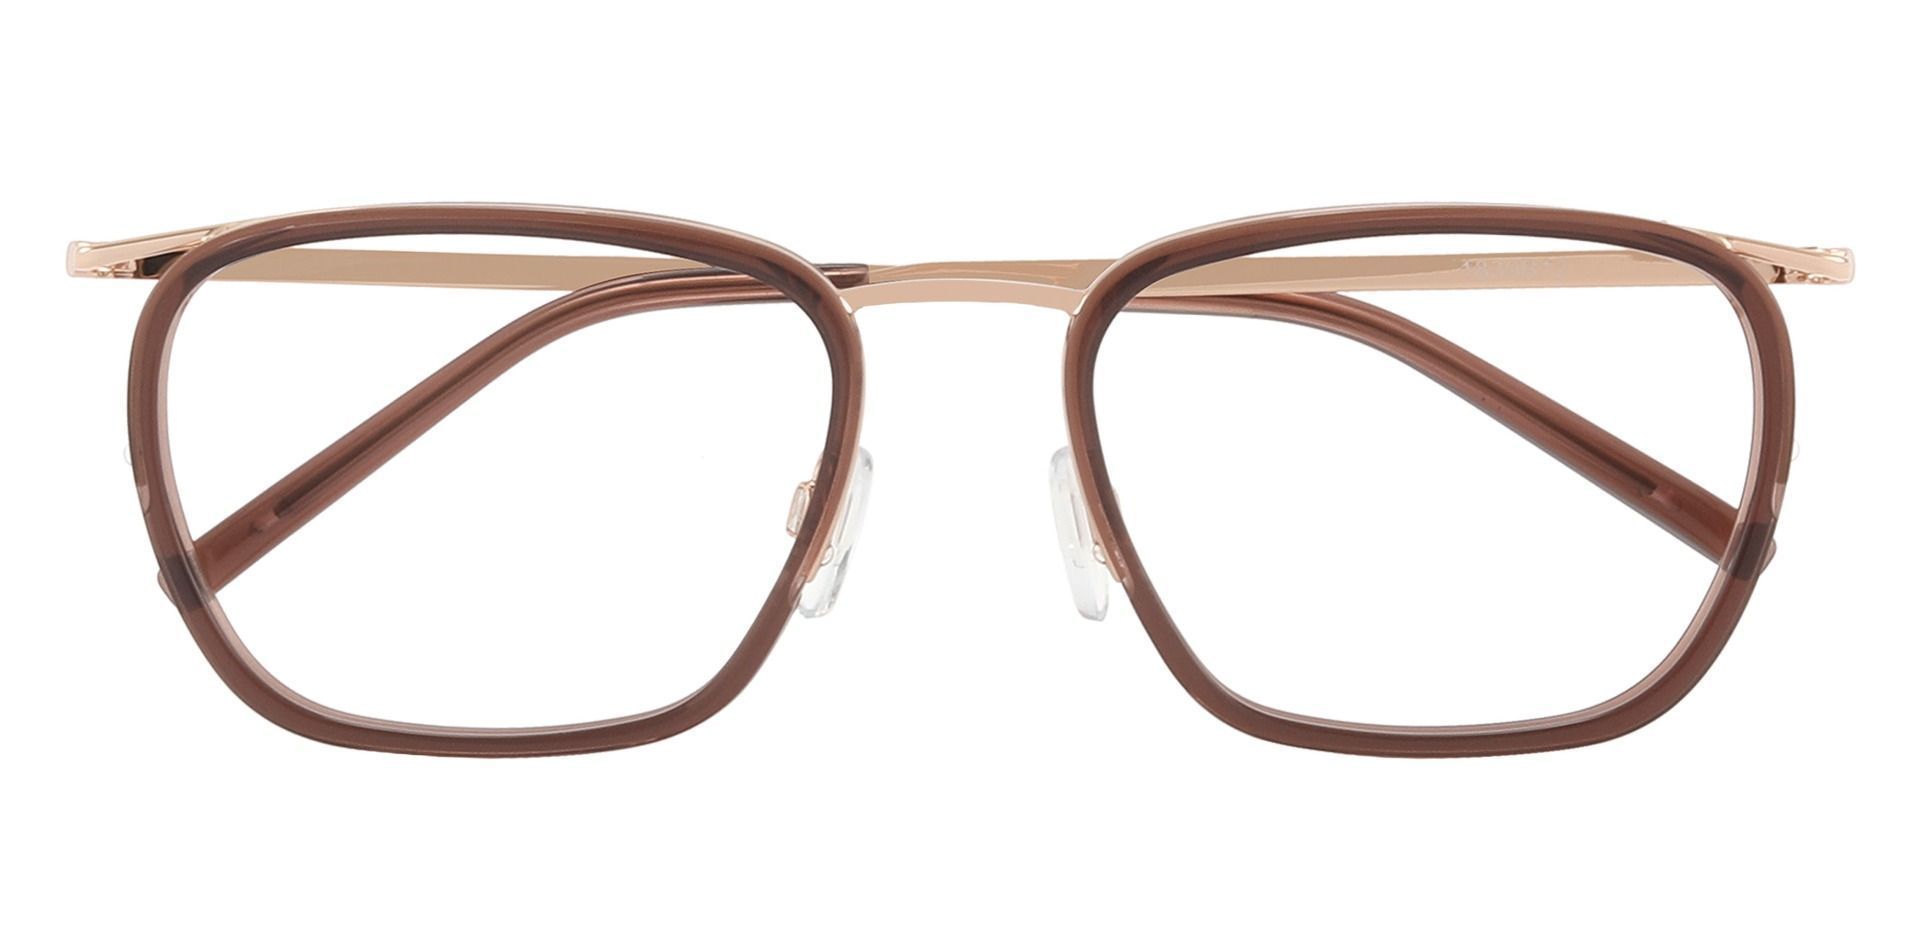 Springfield Square Prescription Glasses - Brown